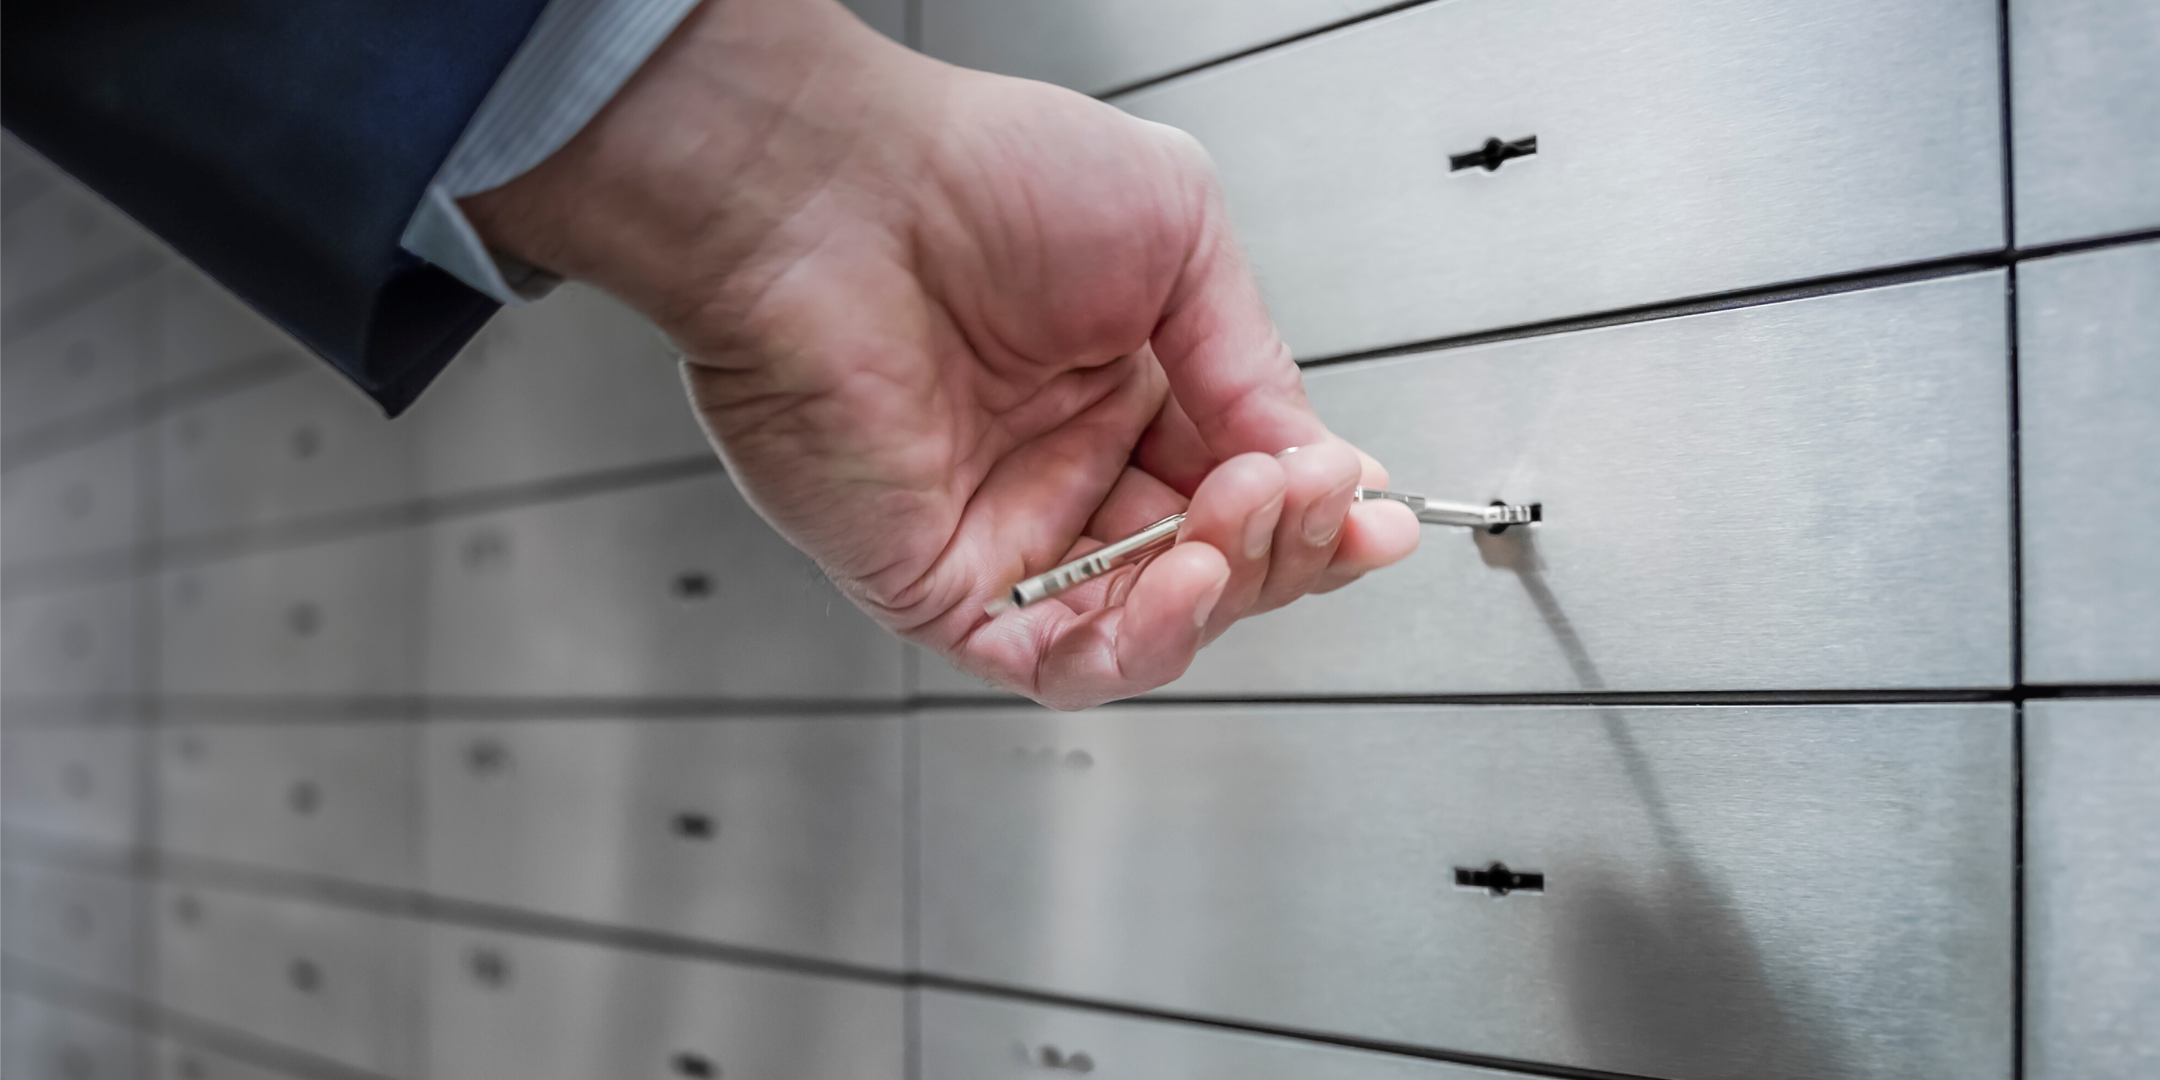 Opening safe deposit box